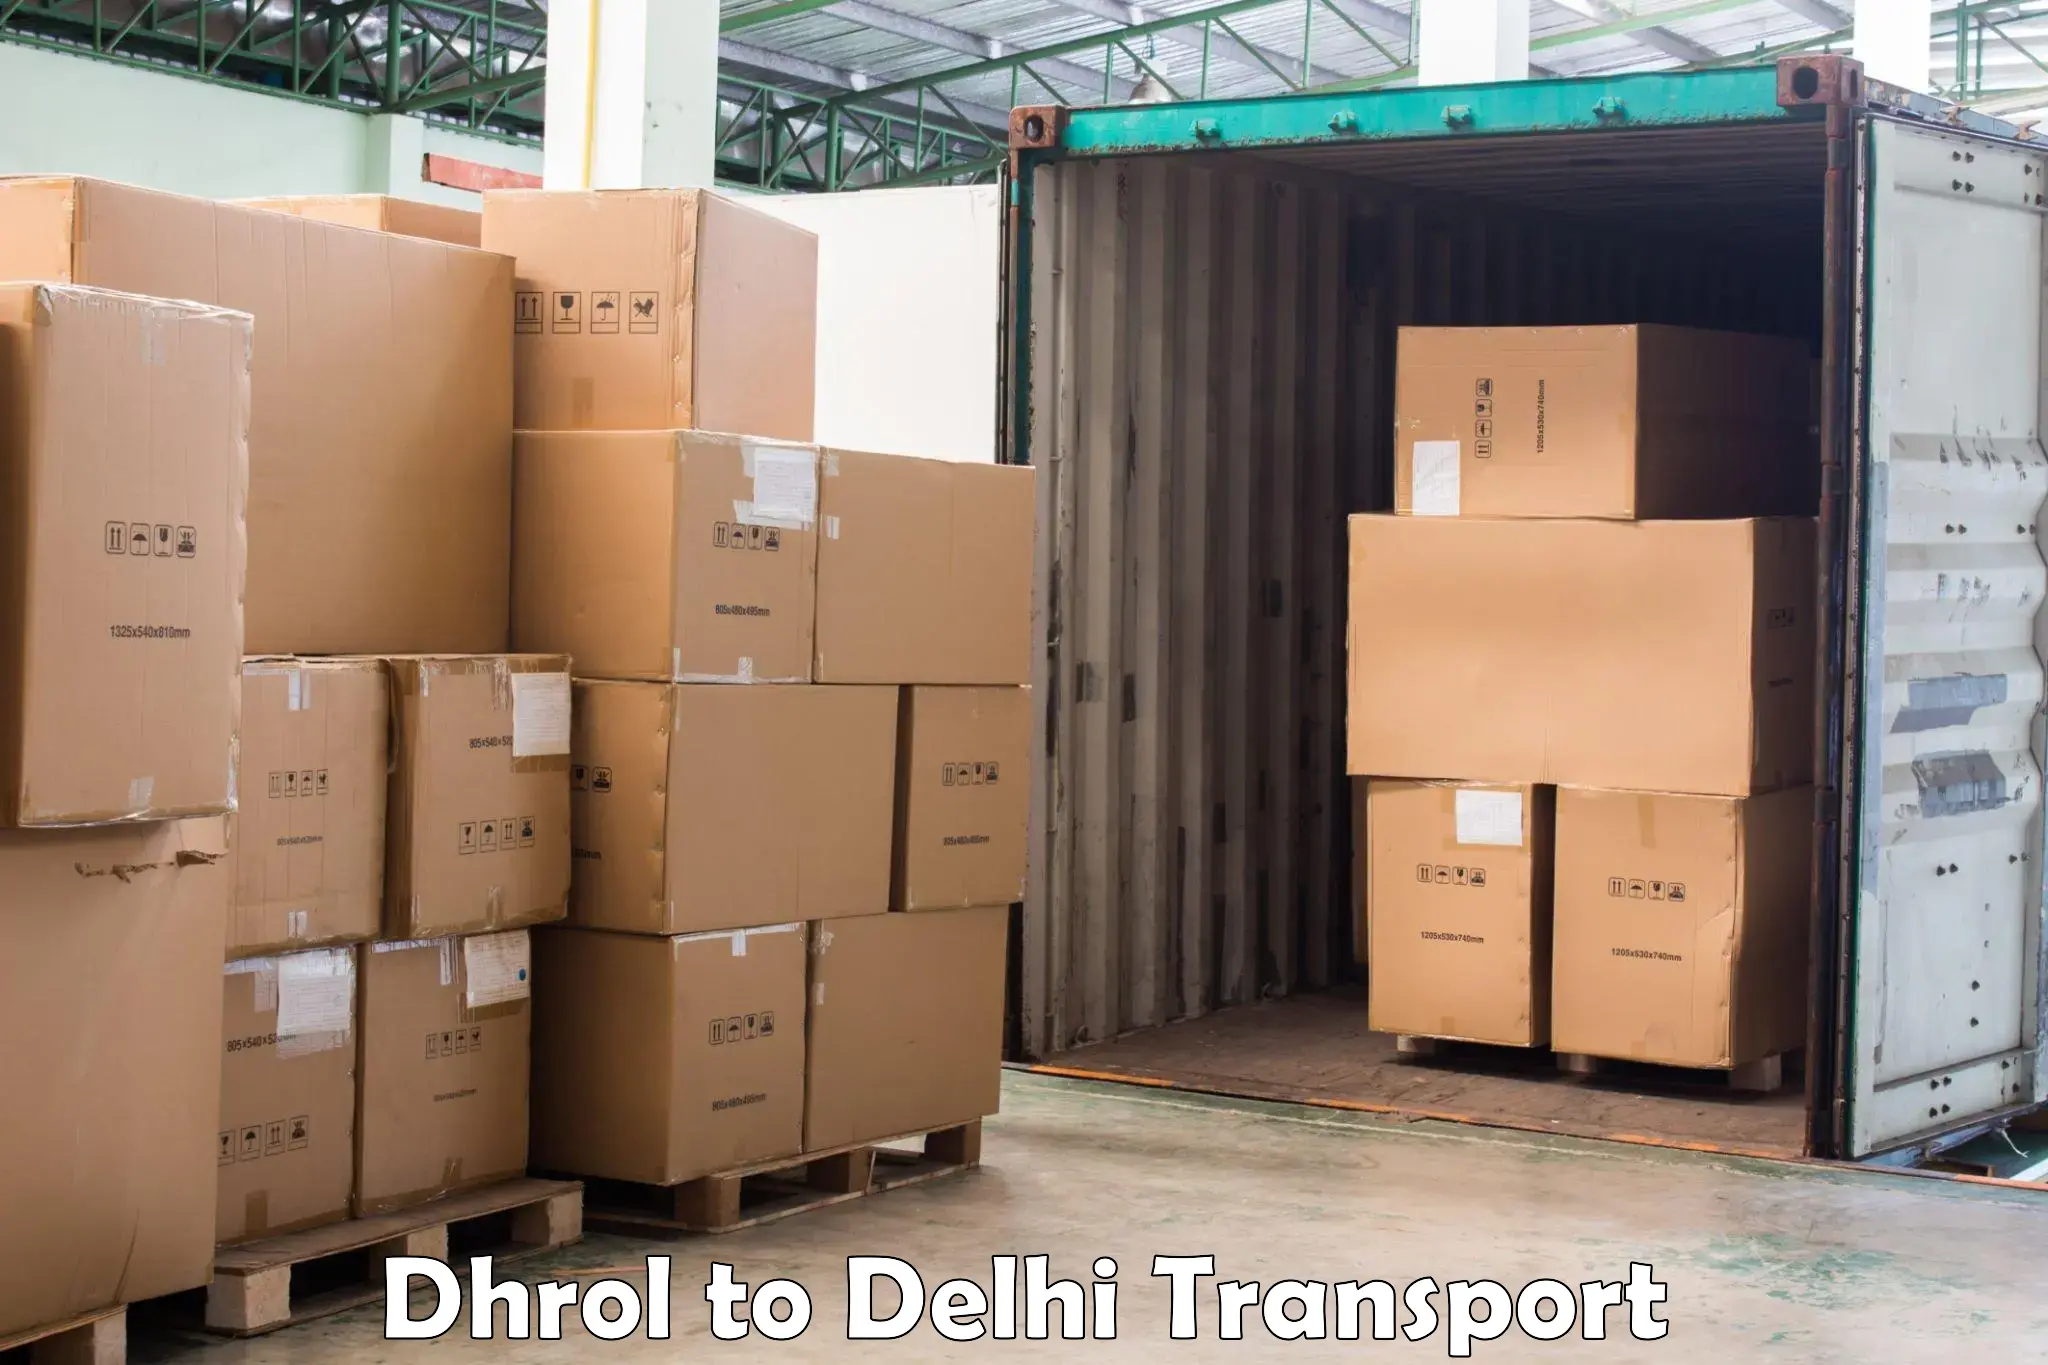 Road transport online services Dhrol to Jawaharlal Nehru University New Delhi